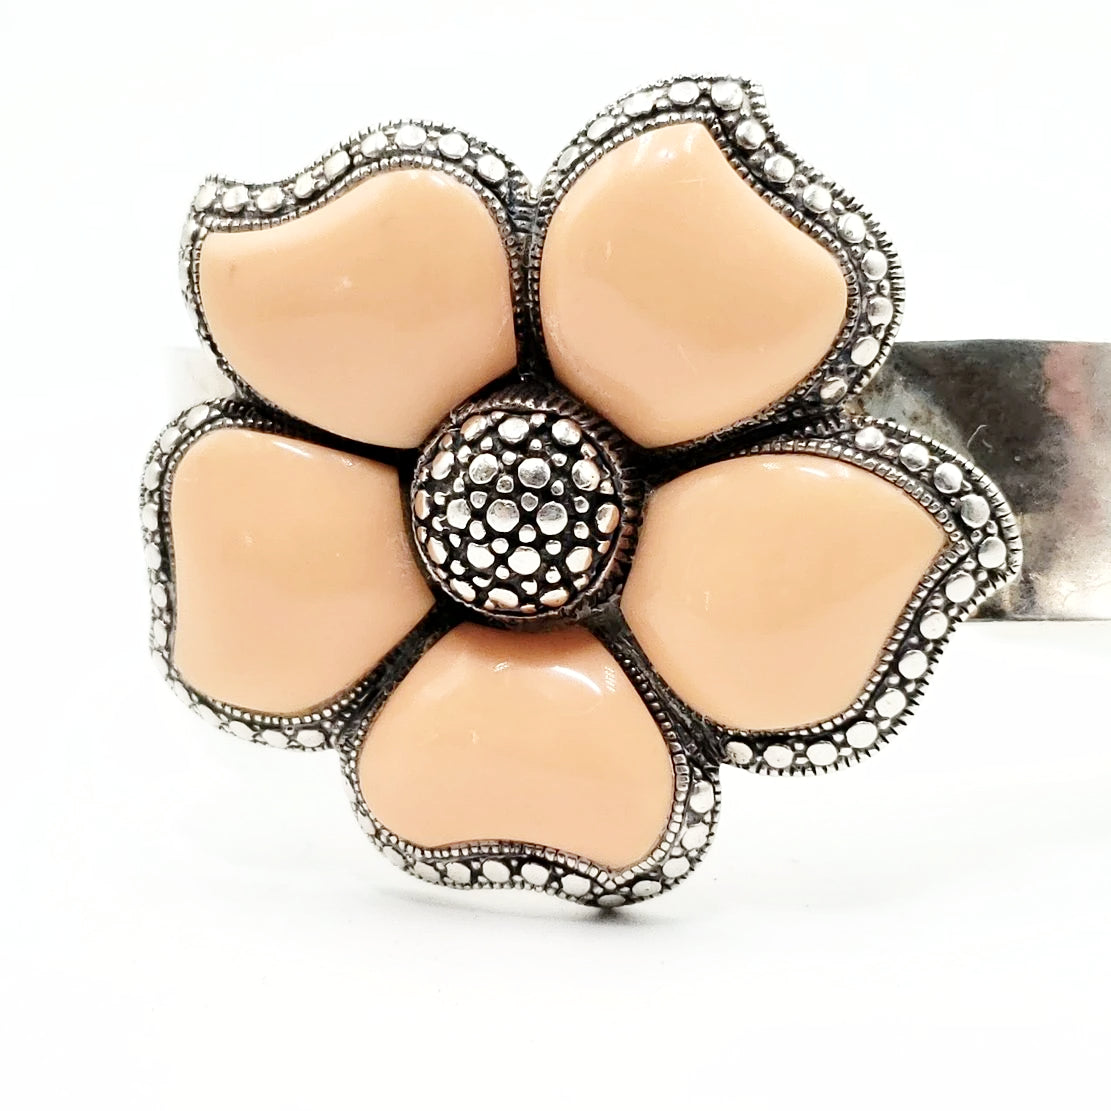 Peach NK Thailand Enamel Sterling Silver Flower Bracelet Cuff Vintage - Bracelet